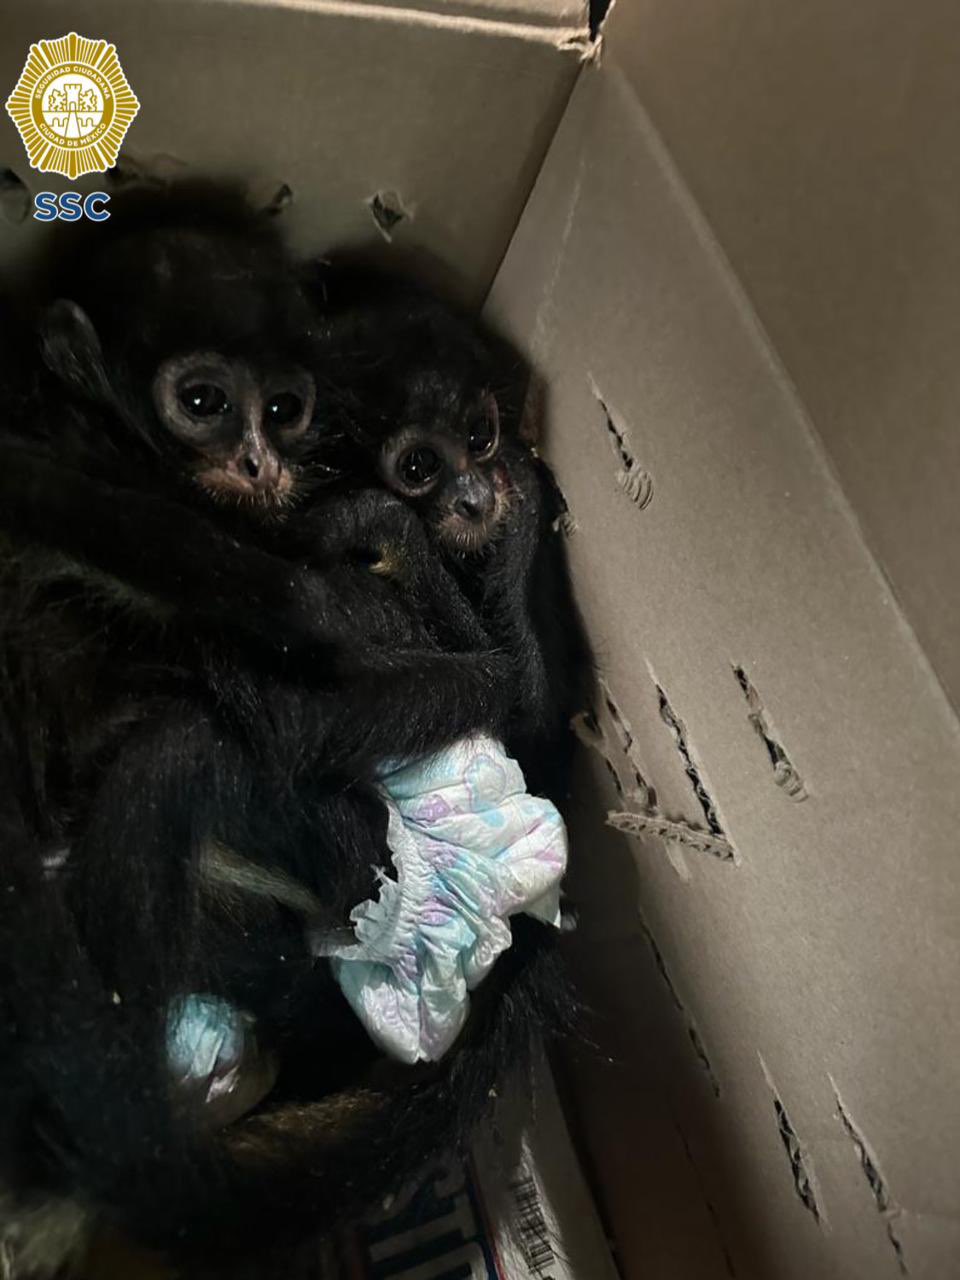 Monos araña fueron rescatados en la alcaldía Venustiano Carranza.
(SSC)